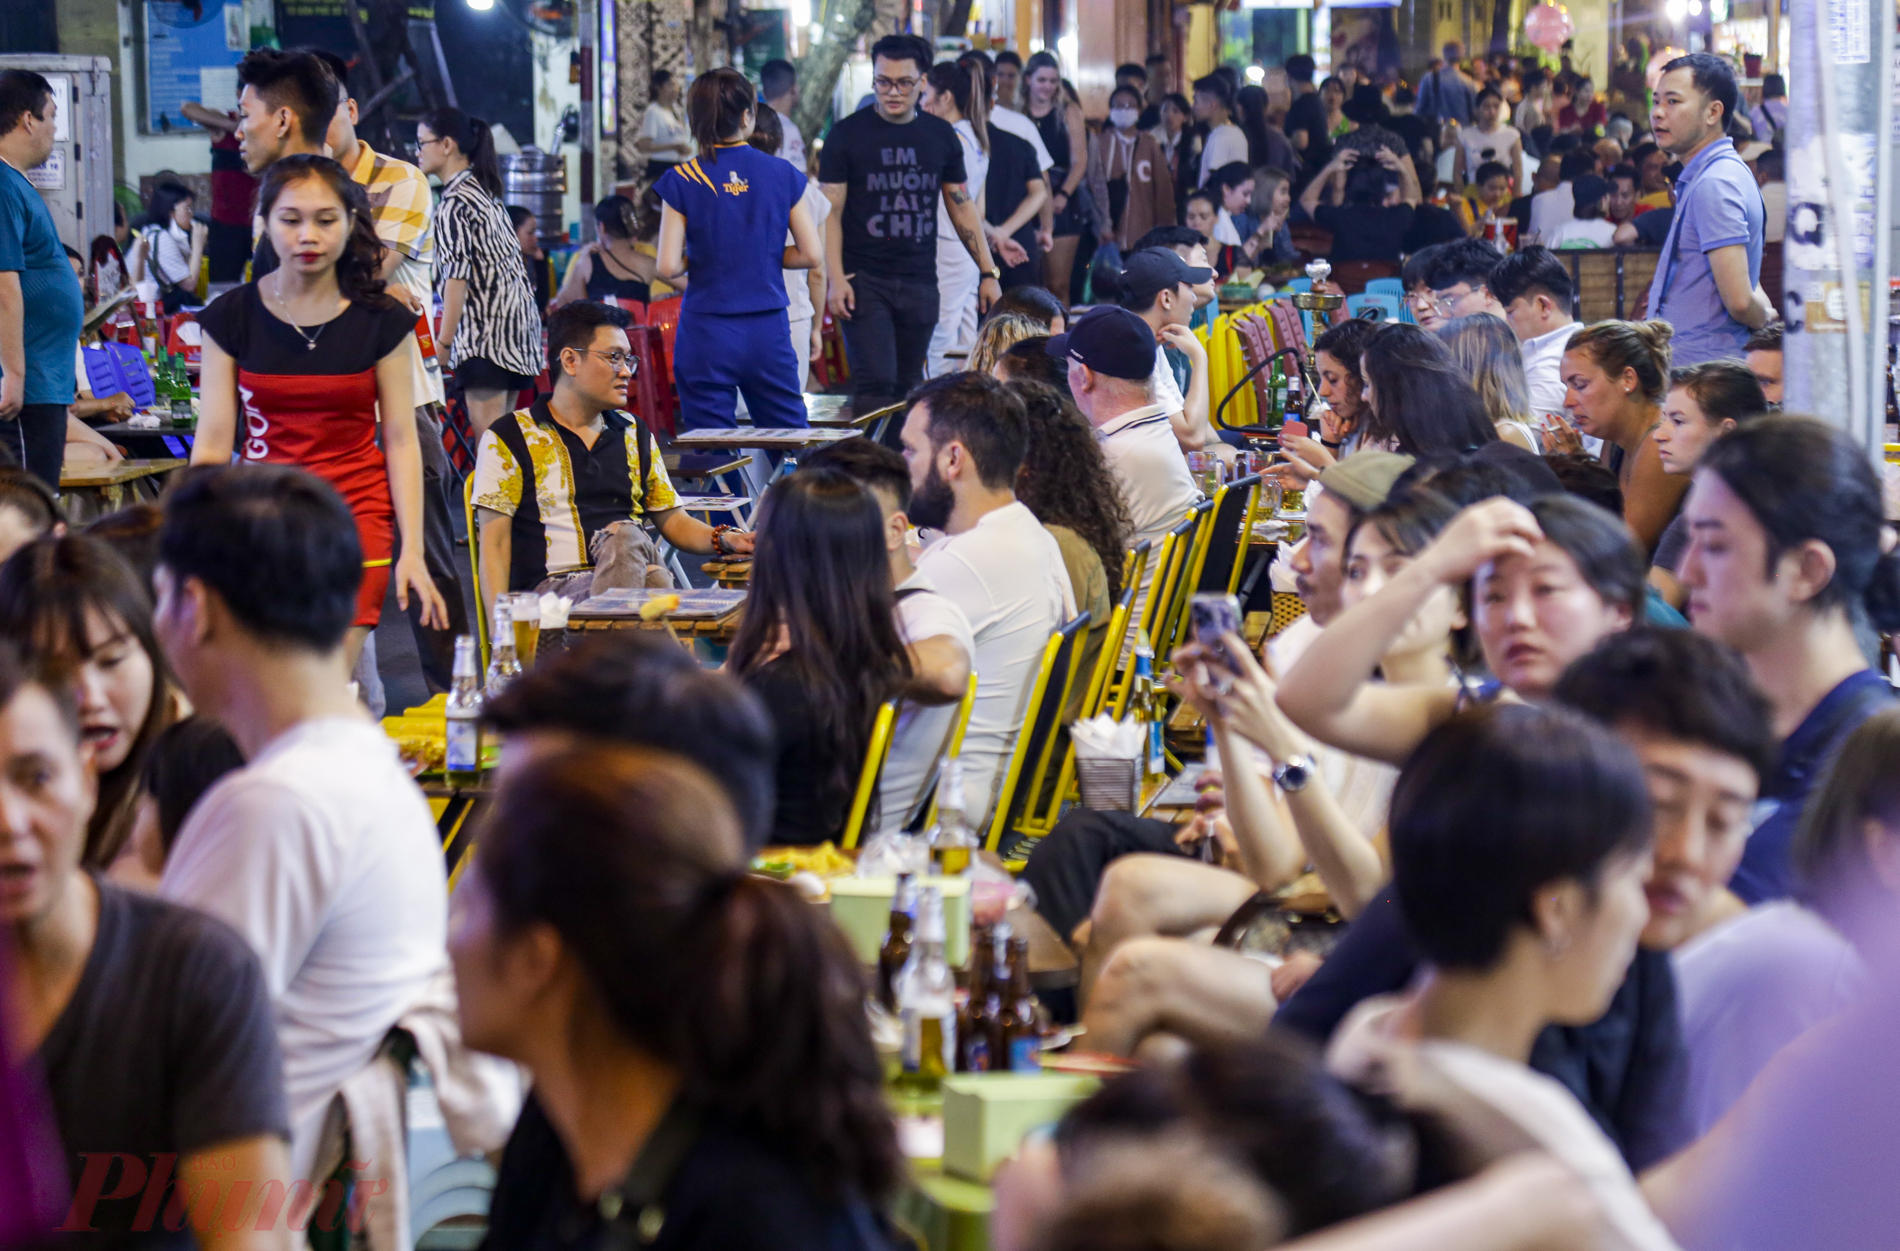 Theo ghi nhận, lúc 20 giờ, hầu như toàn bộ các quán bia, cà phê, … trên phố Tạ Hiện đều đã chật kín khách ngồi.